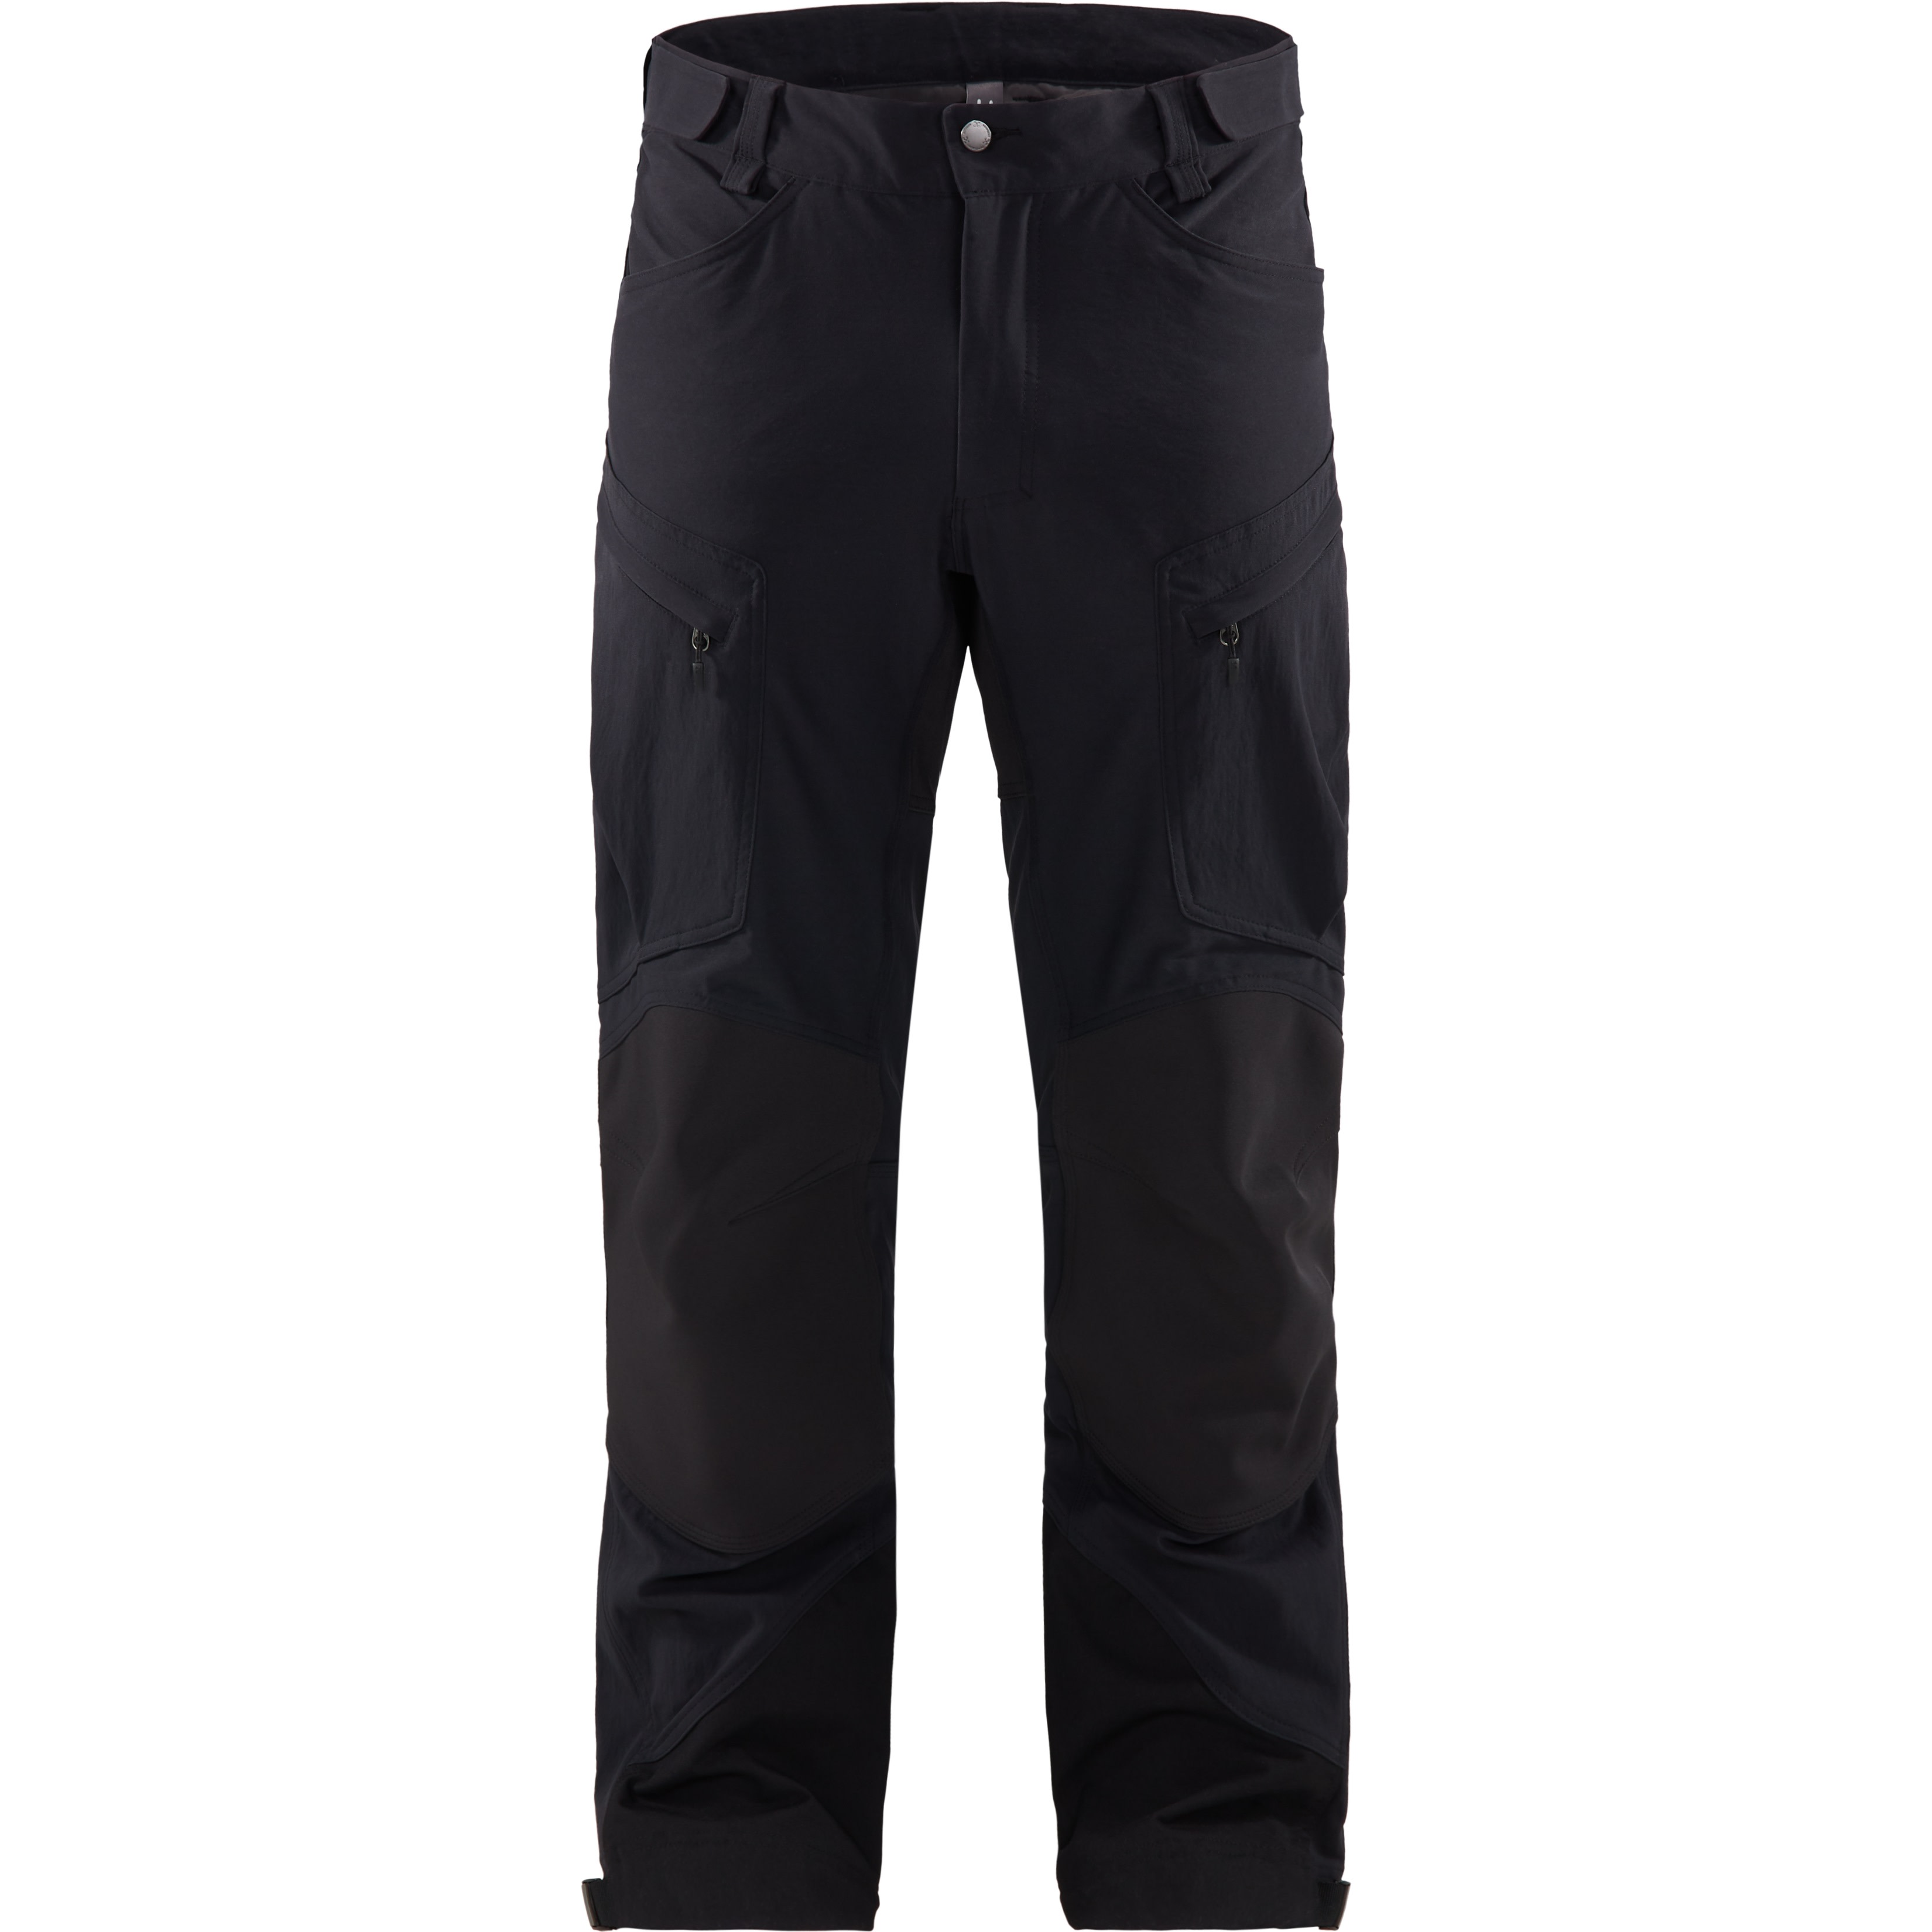 Haglöfs Men’s Rugged Mountain Pant True Black Solid Short